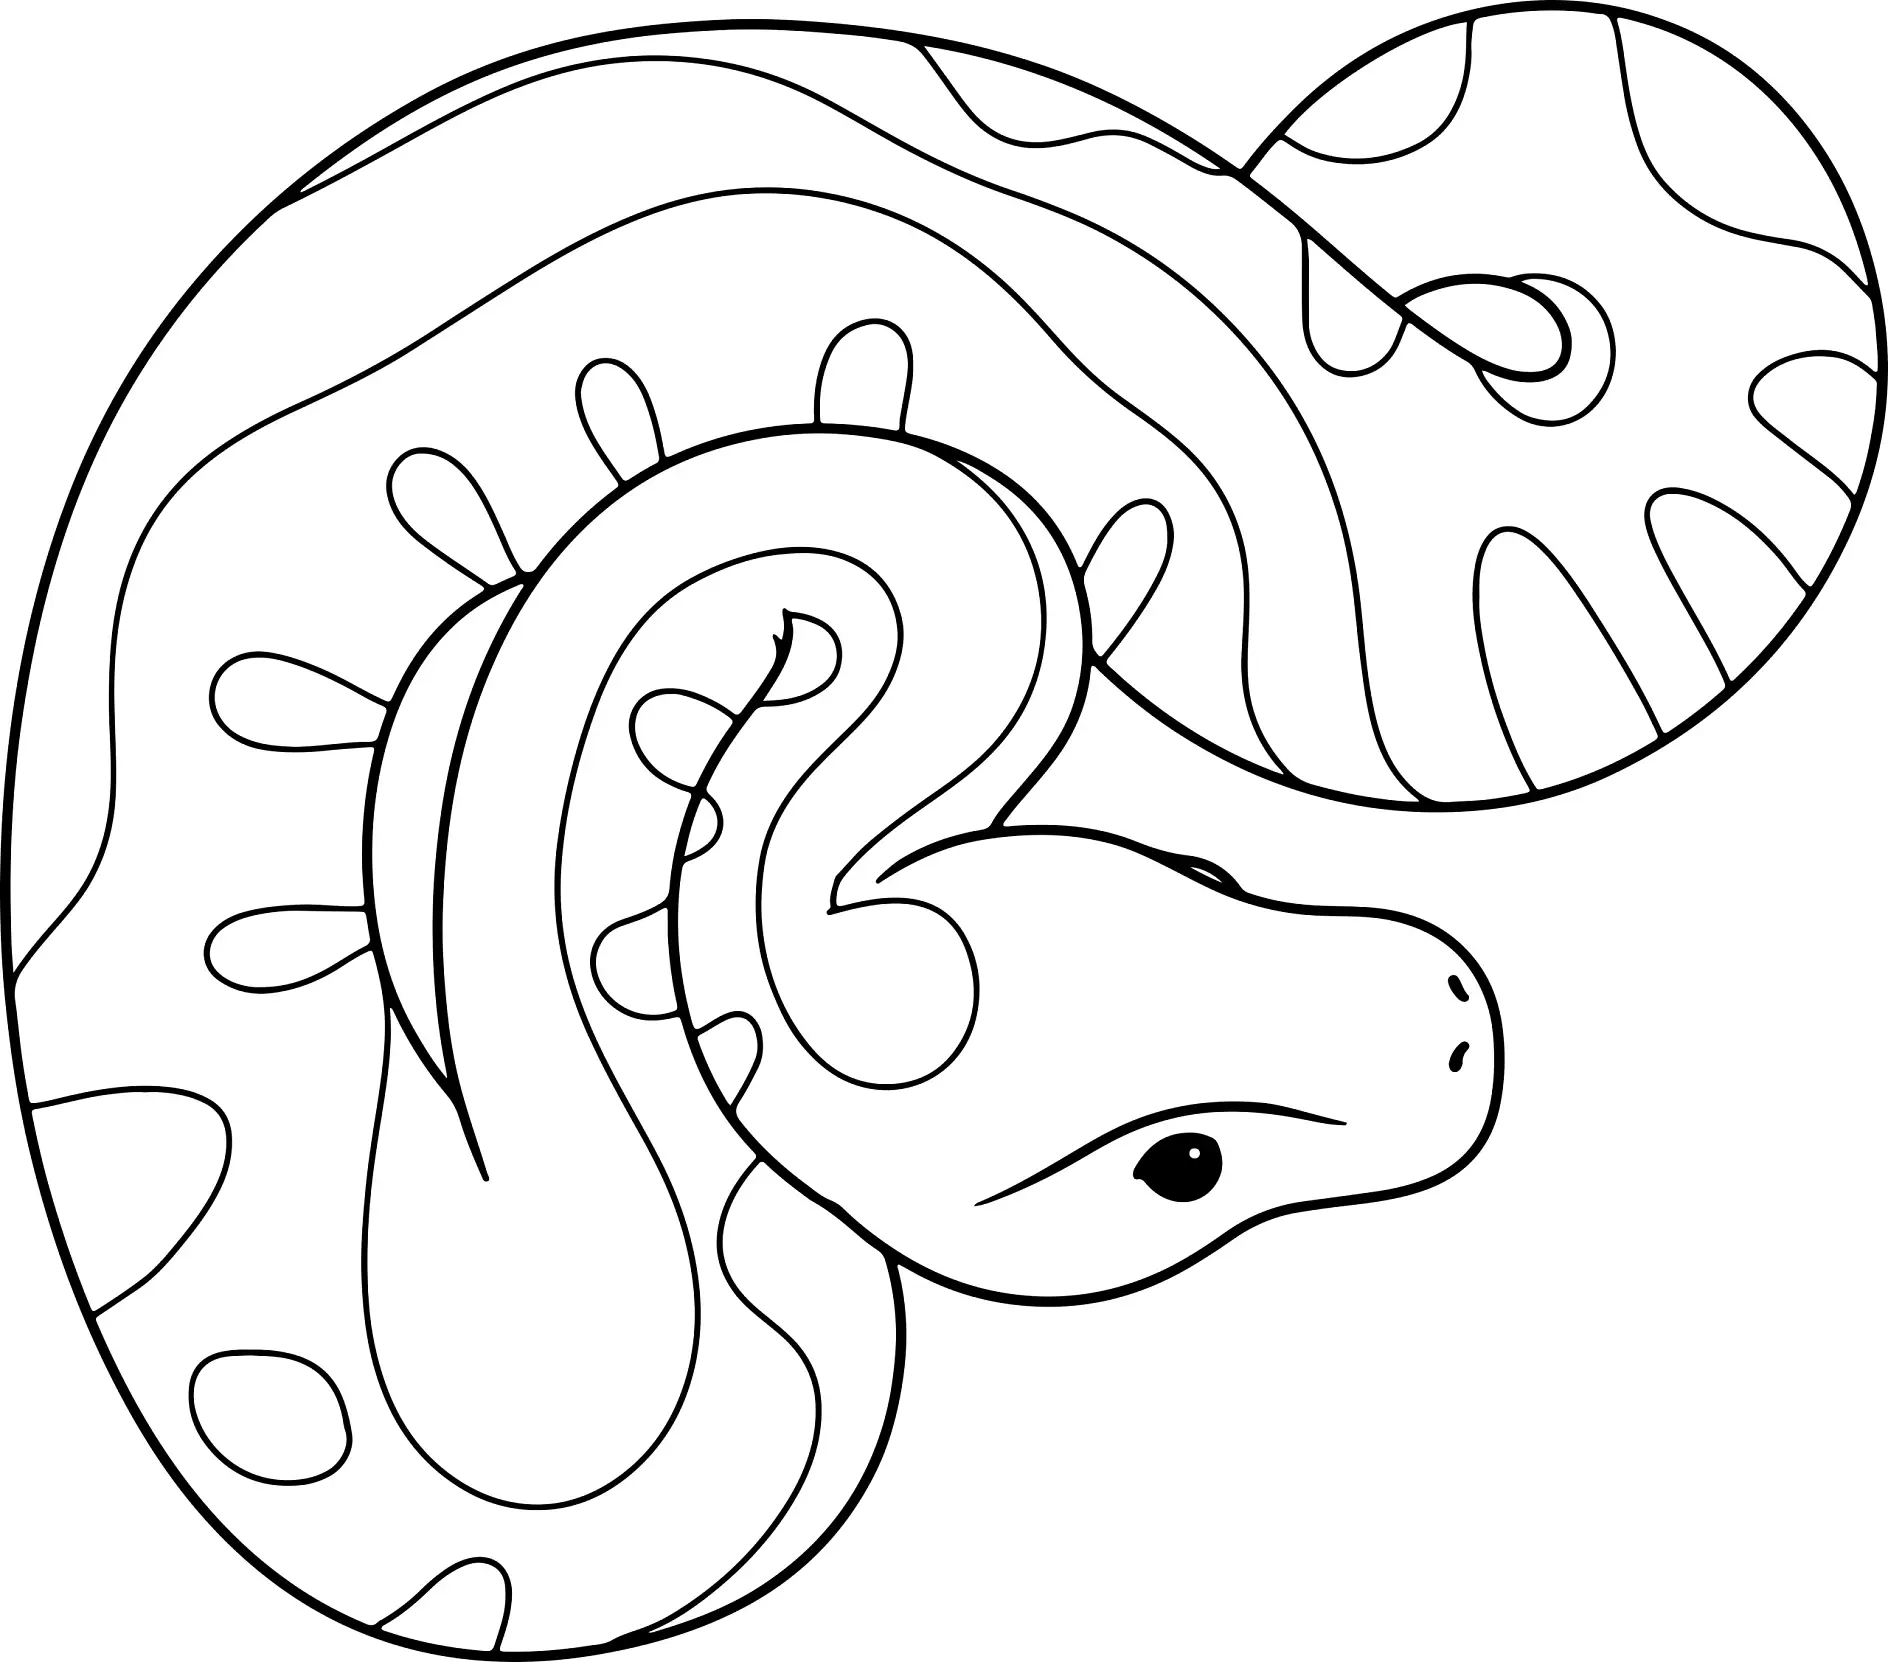 Ausmalbild Schlange mit Kreisen und Wellenlinien Muster